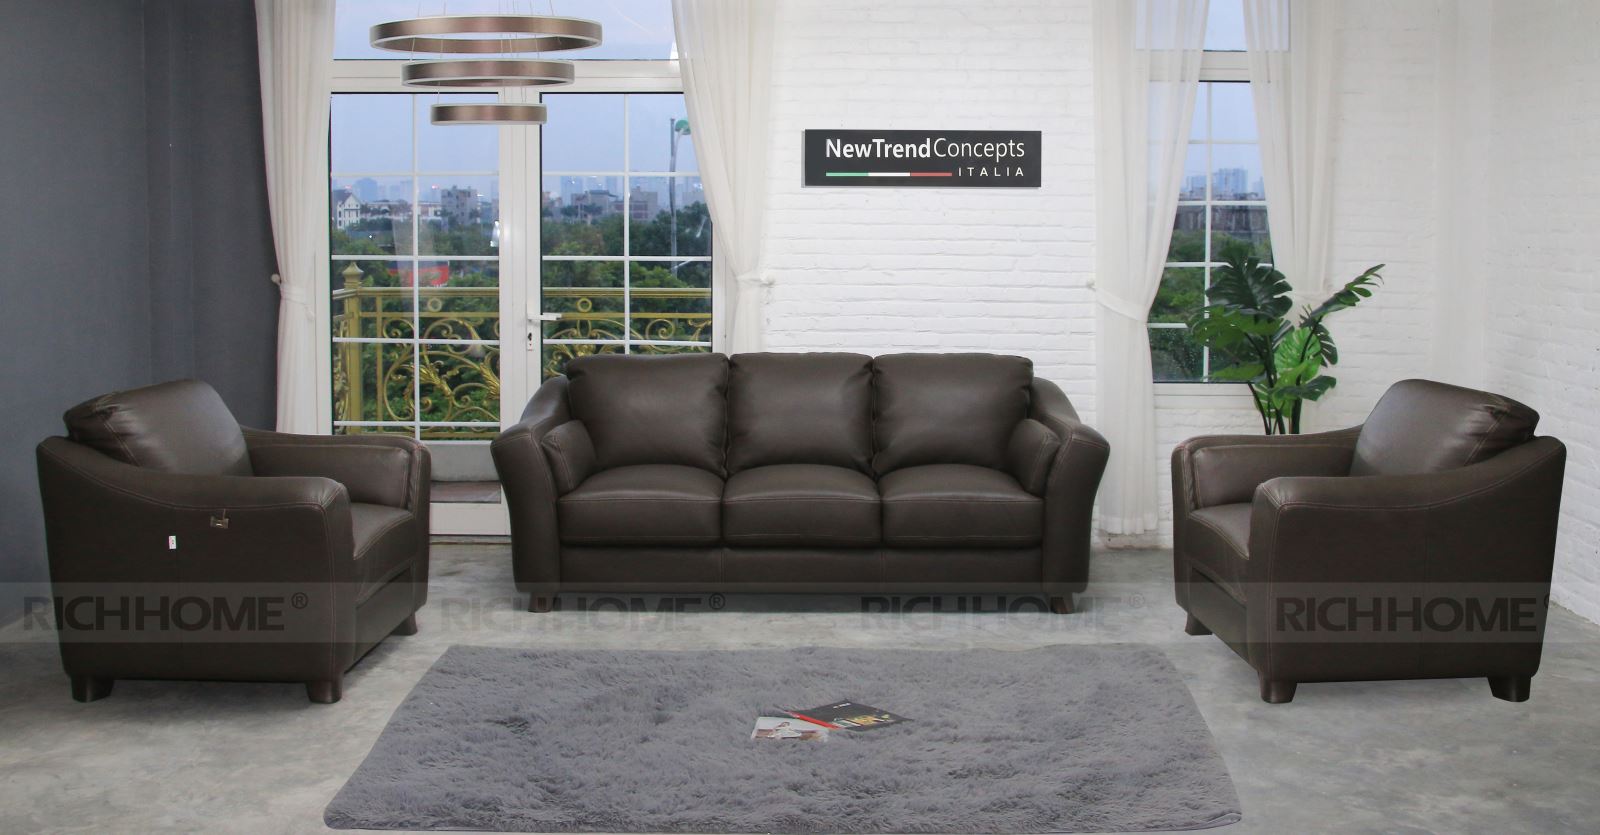 Những mẫu sofa da hiện đại cho phòng khách nhà bạn - Ảnh 2